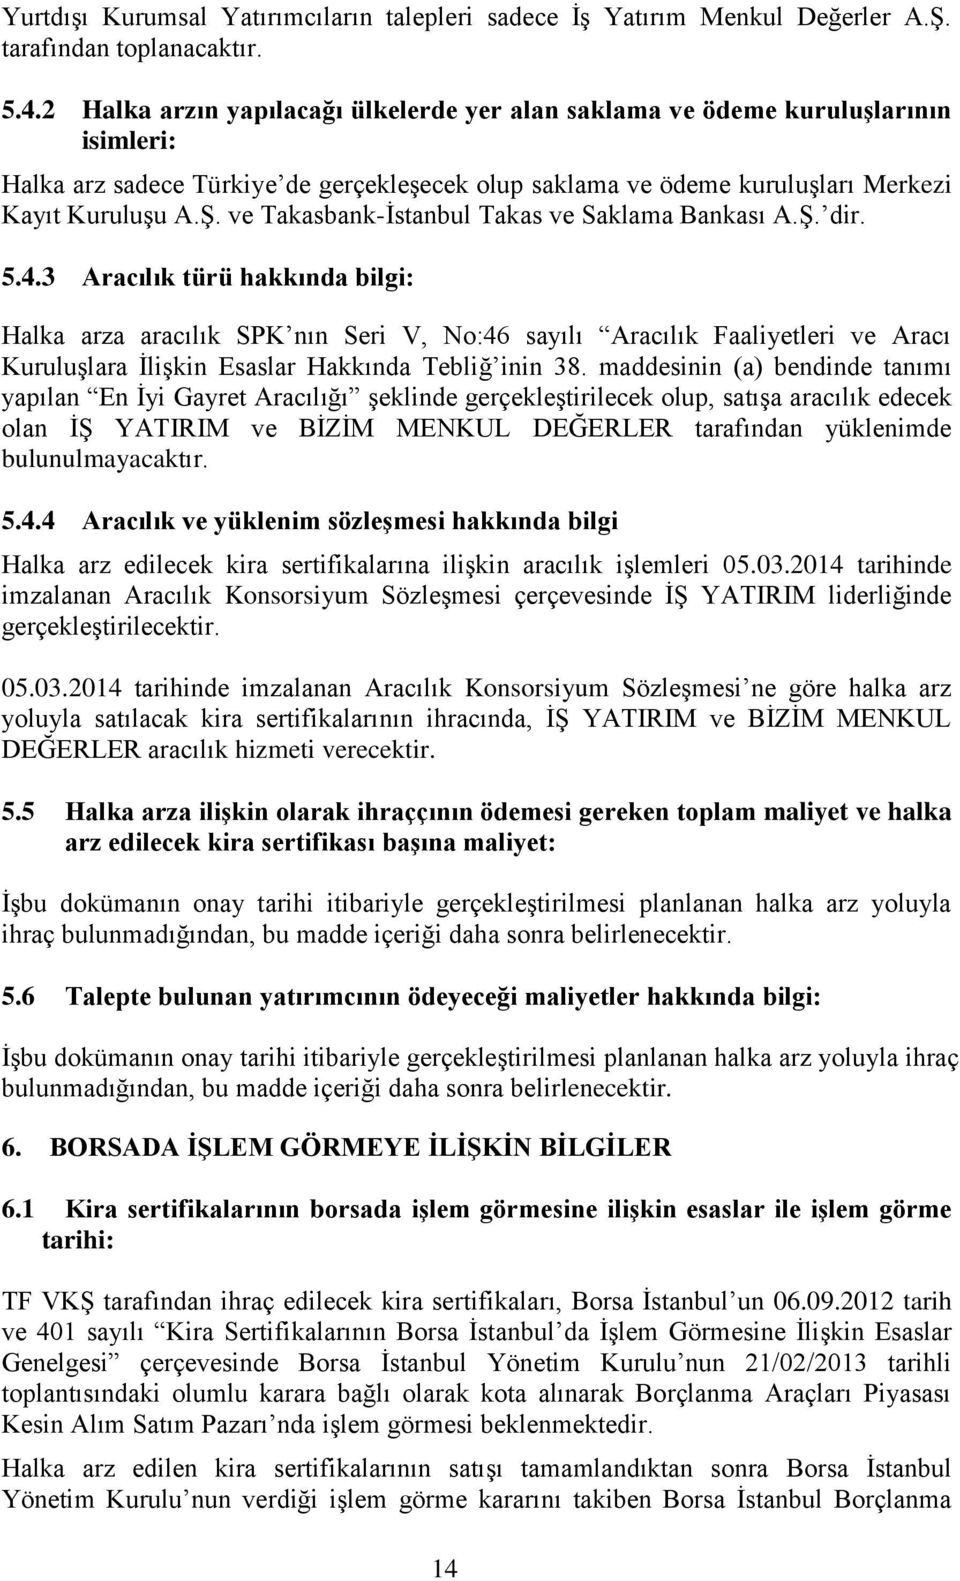 ve Takasbank-İstanbul Takas ve Saklama Bankası A.Ş. dir. 5.4.